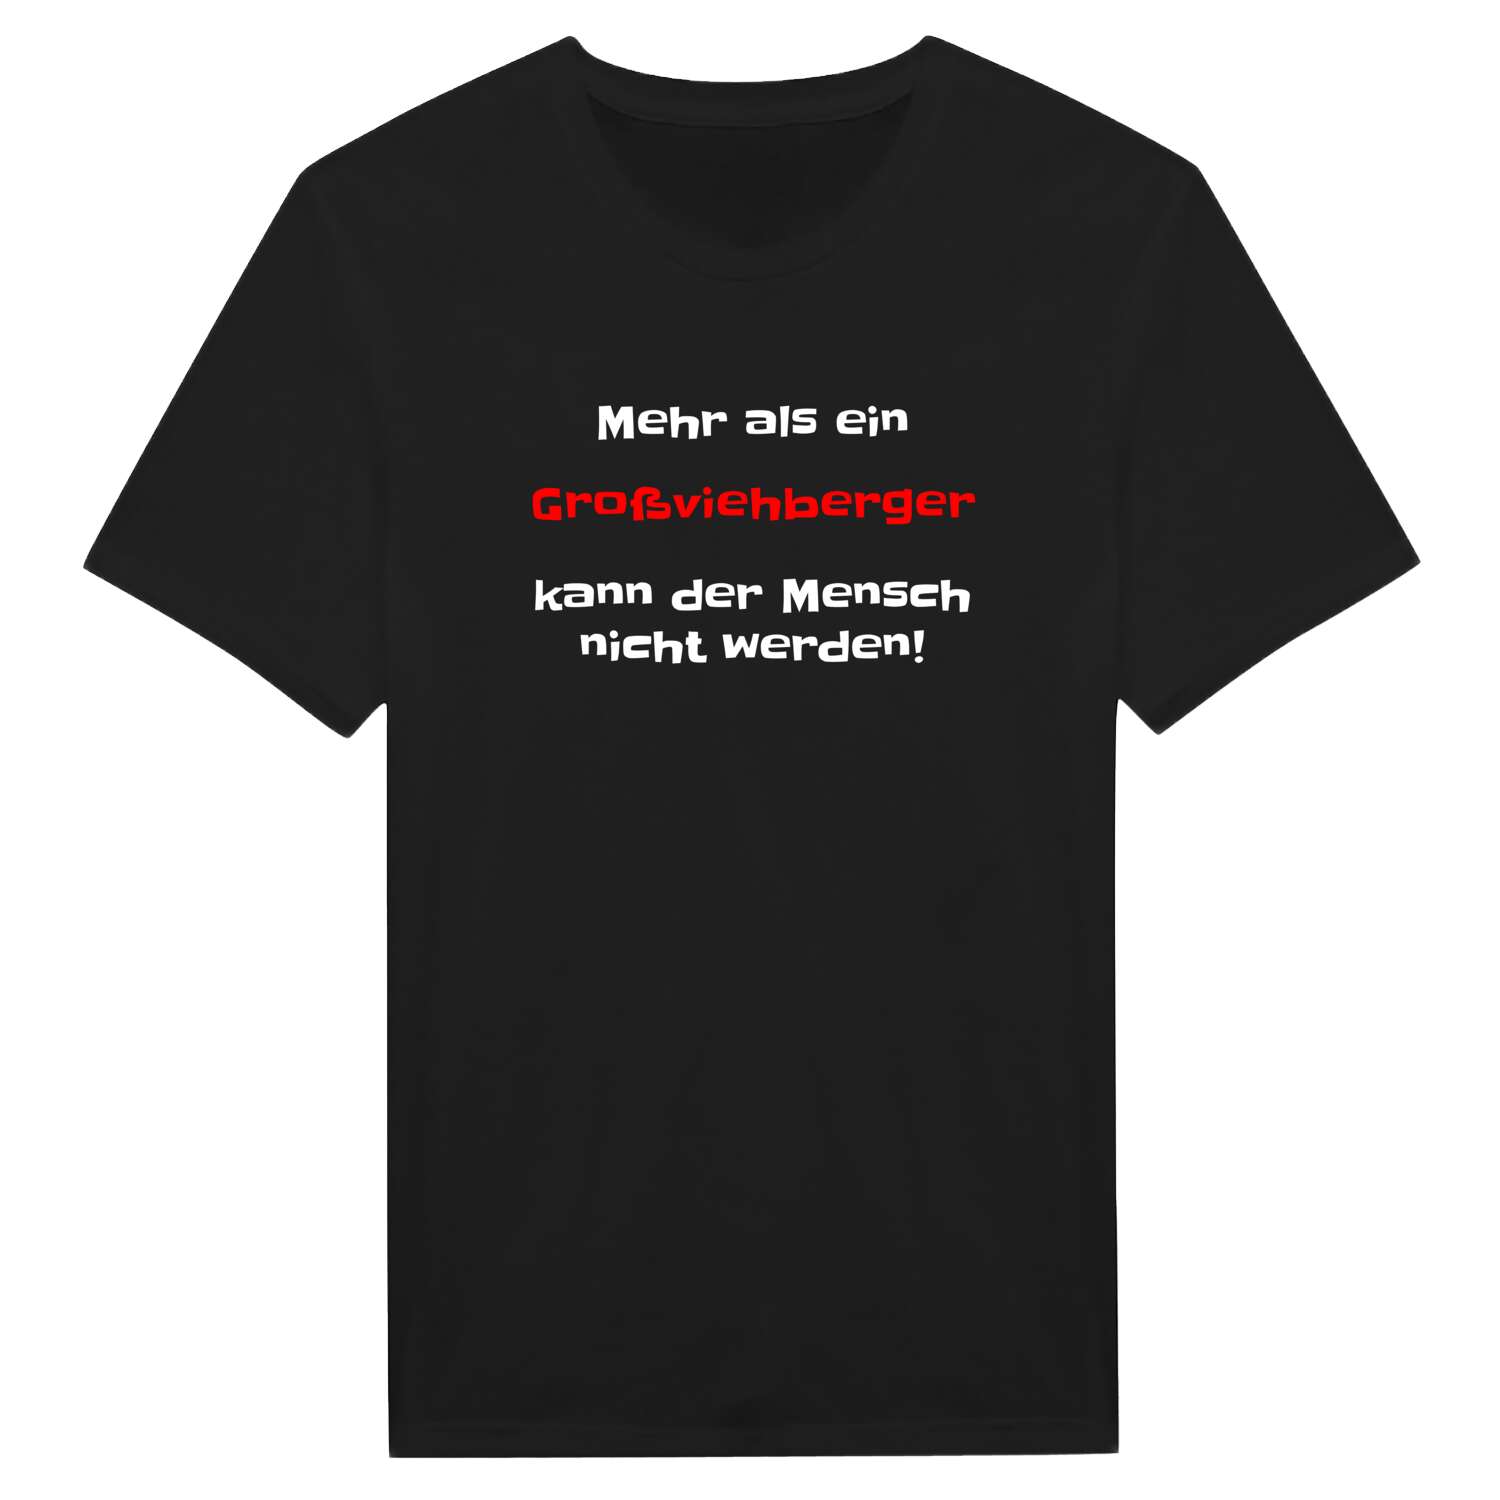 Großviehberg T-Shirt »Mehr als ein«